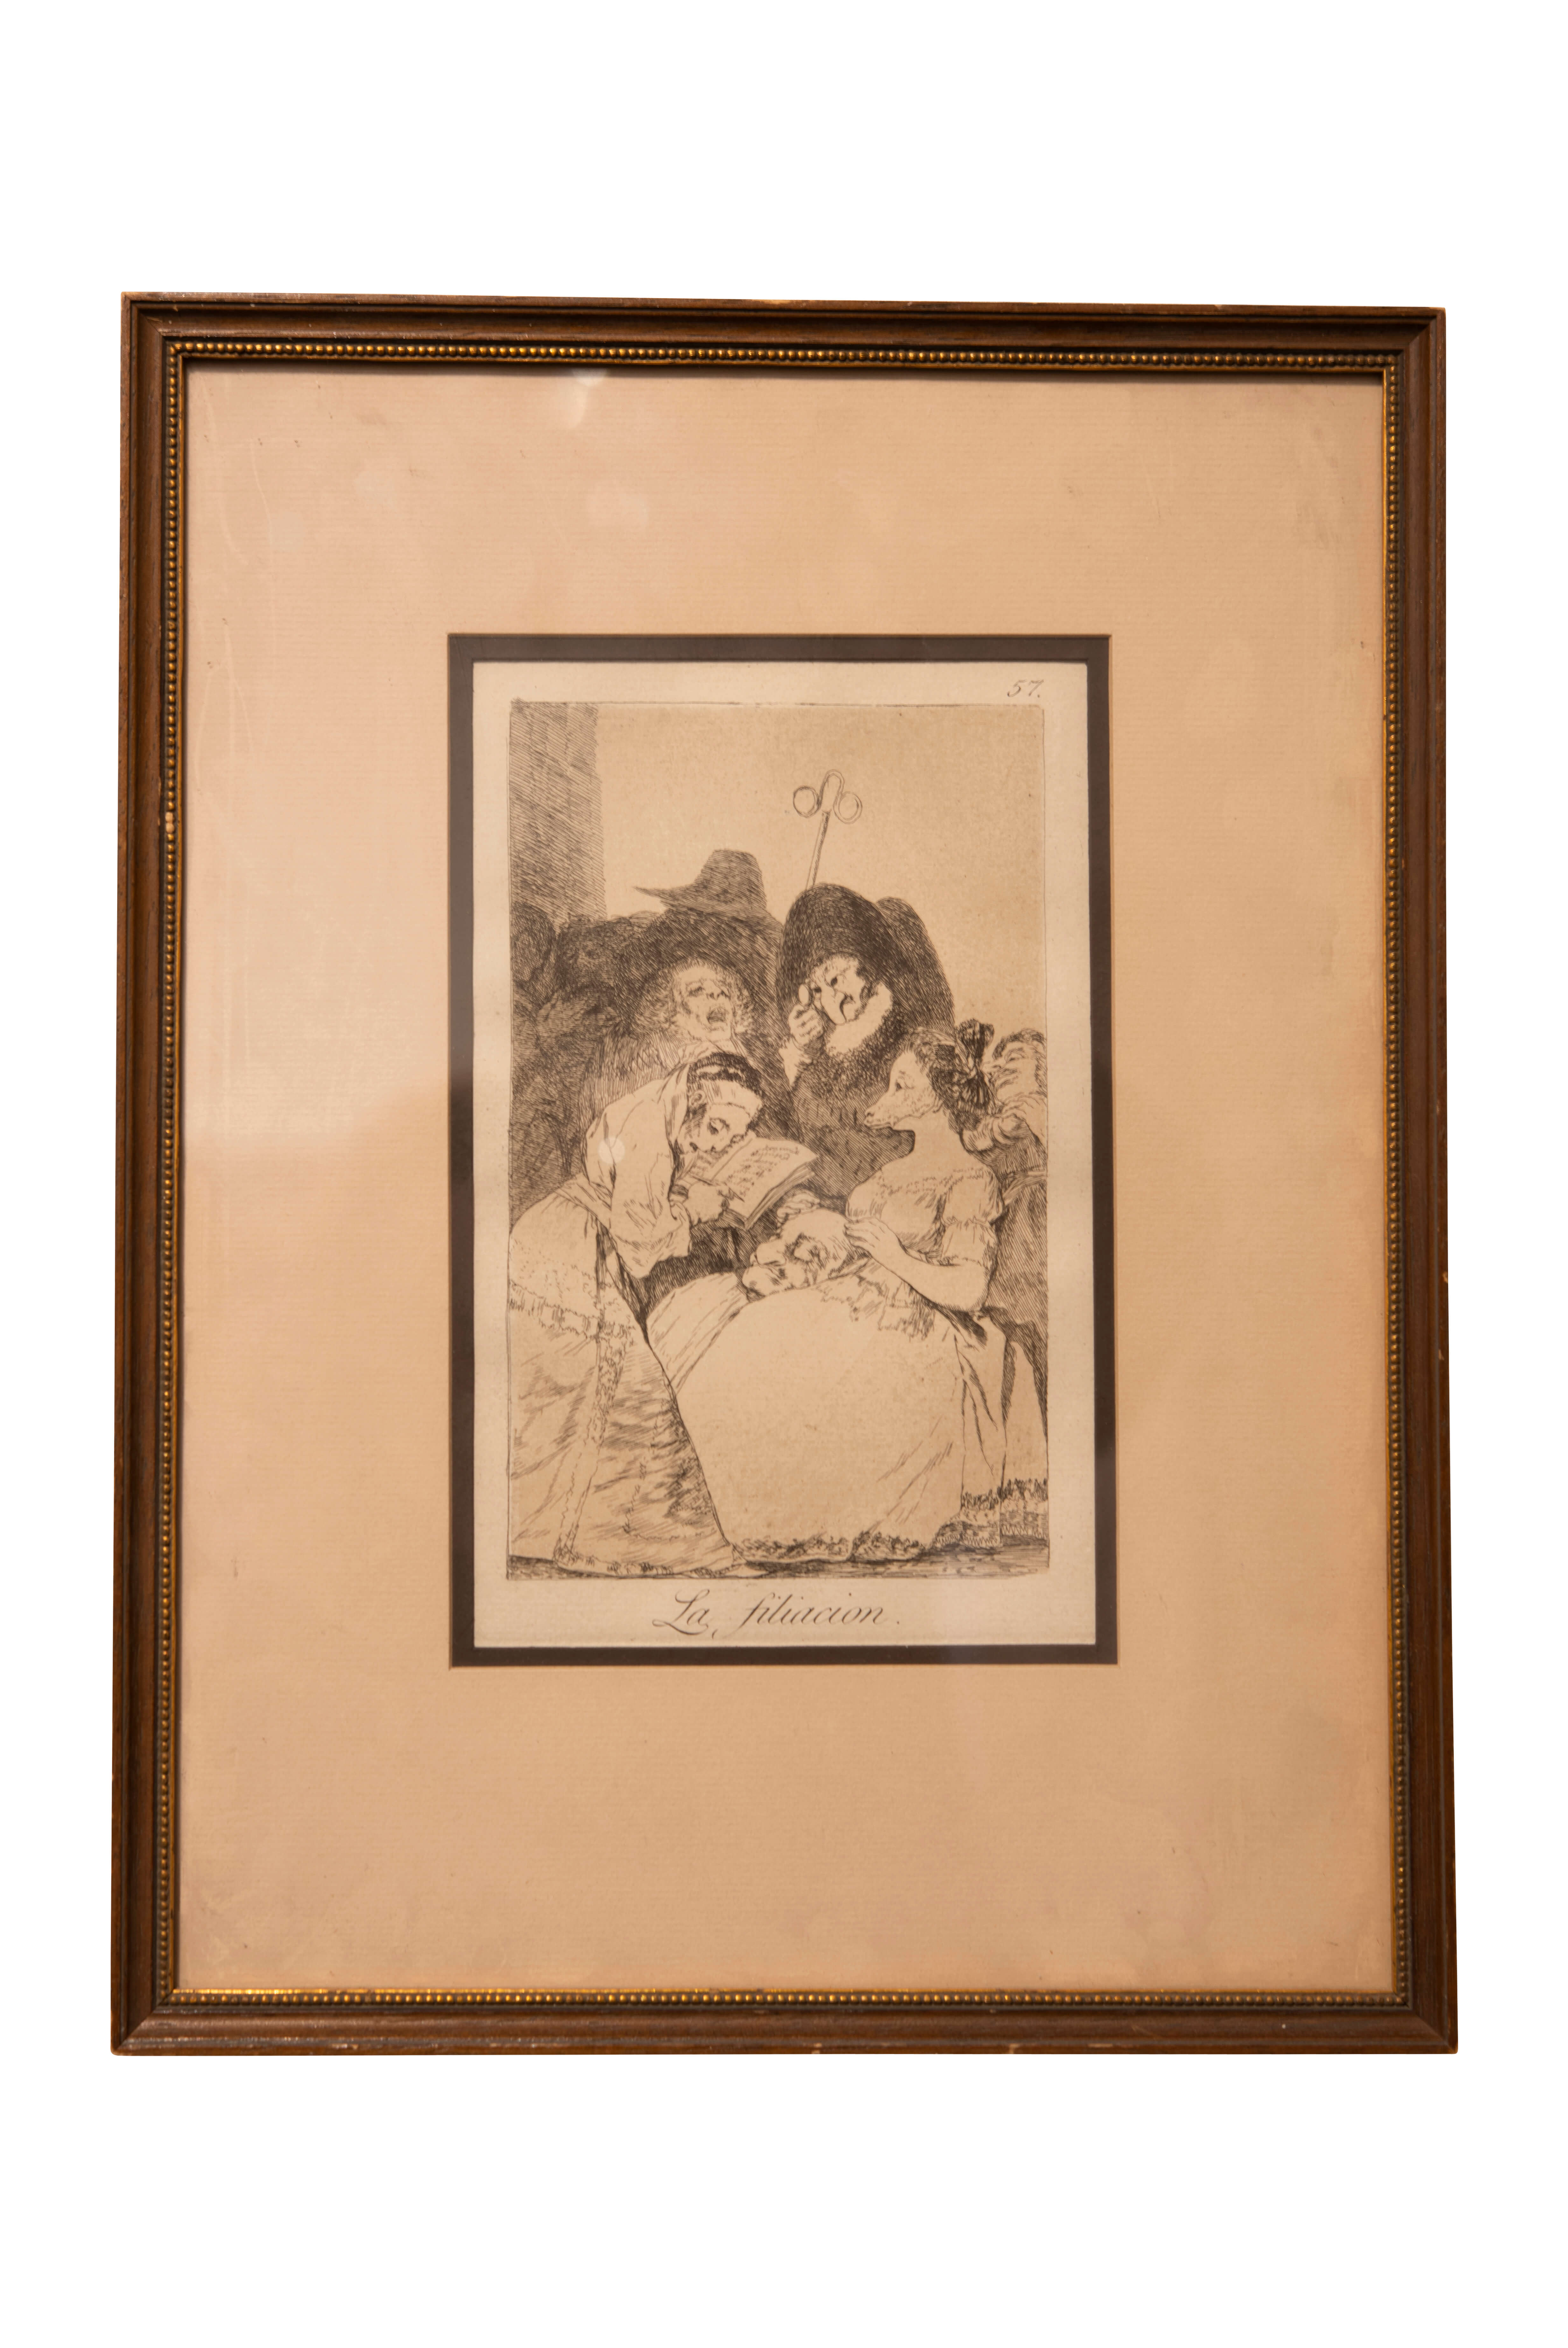 Nach Francisco de Goya La Fliacion Nr.57 aus Los Caprichos | After Francisco de Goya La Fliacion, Nr